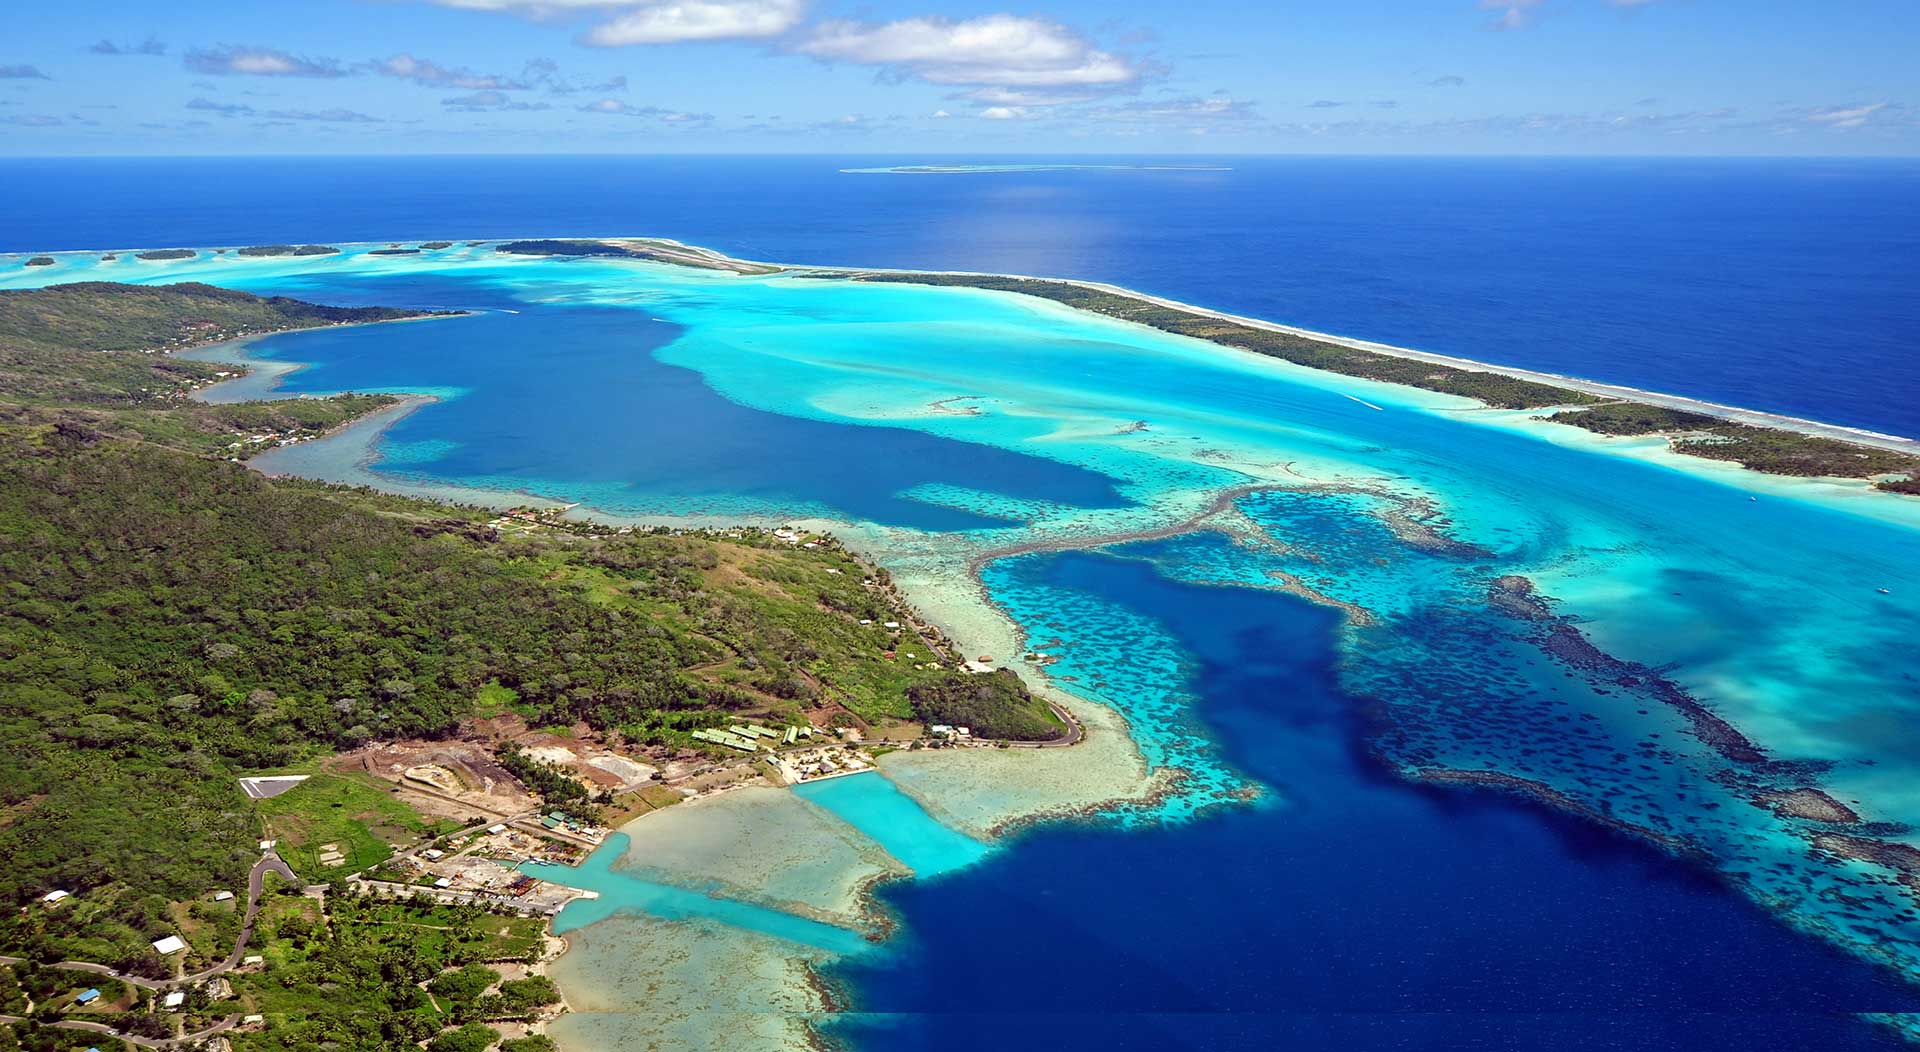 Bora Bora, French Polynesia: Catamaran cruise